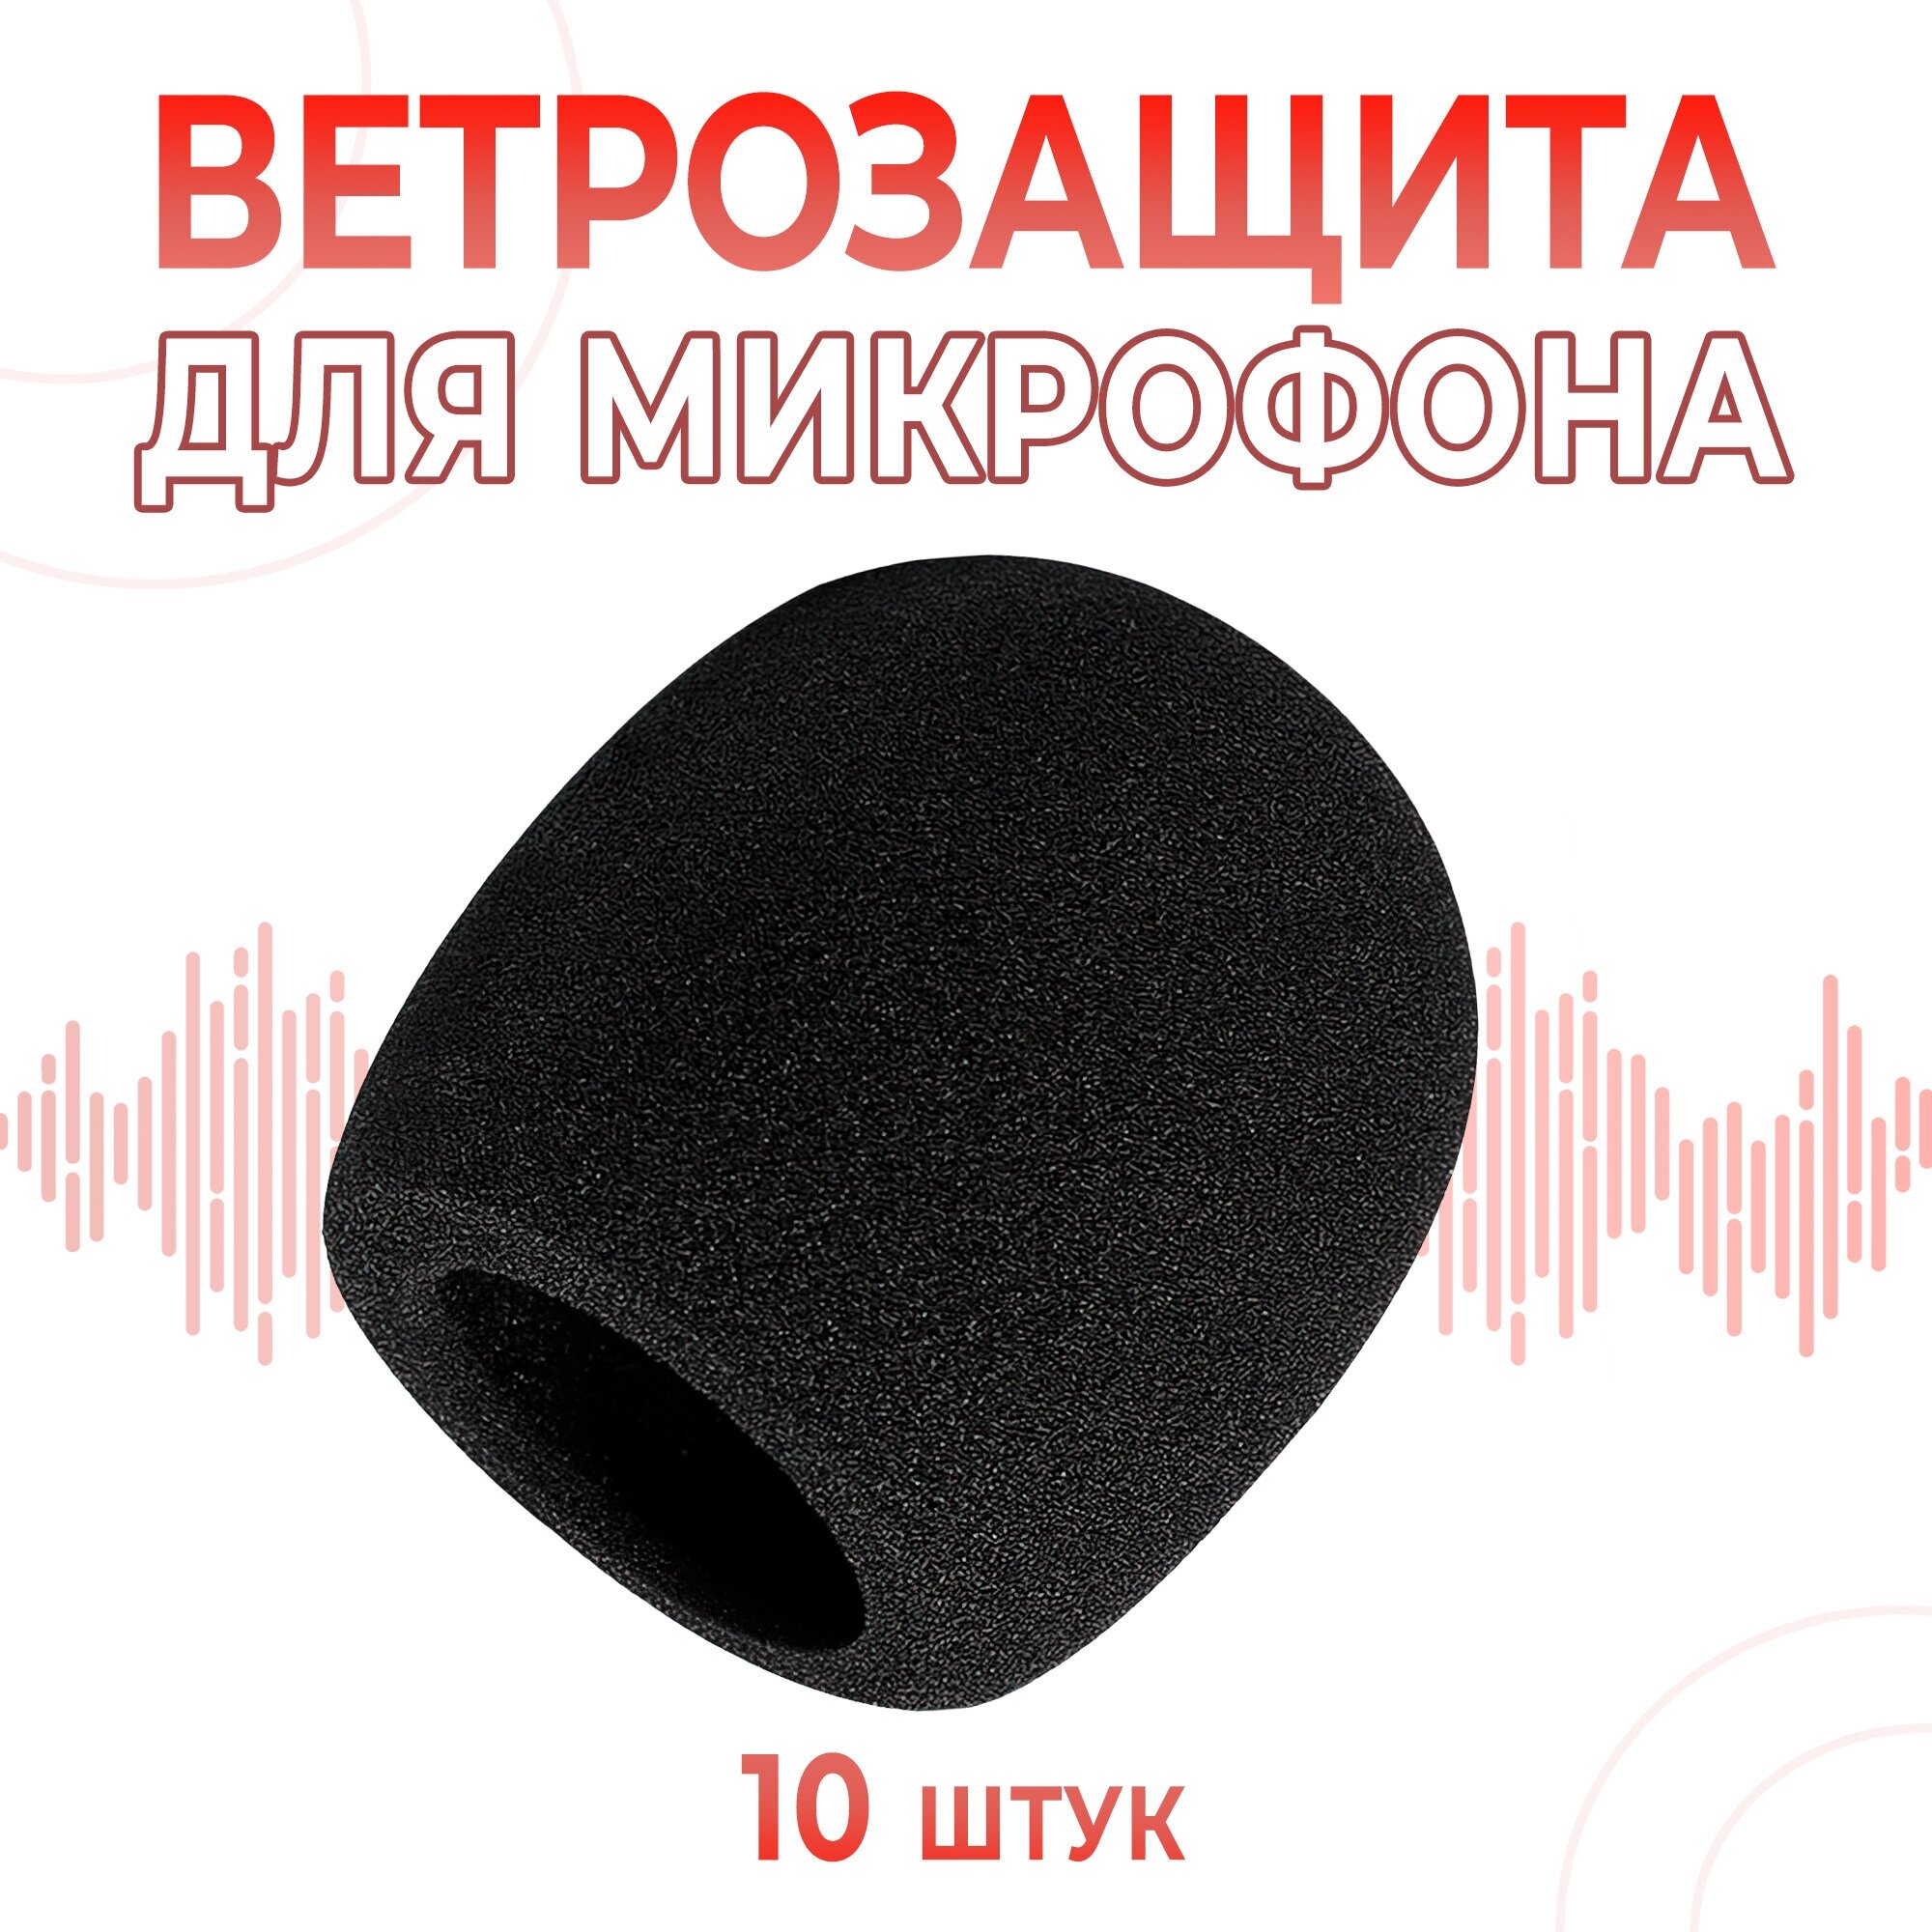 (10 шт) Поп фильтр / ветрозащита для микрофона — купить в интернет-магазине по низкой цене на Яндекс Маркете